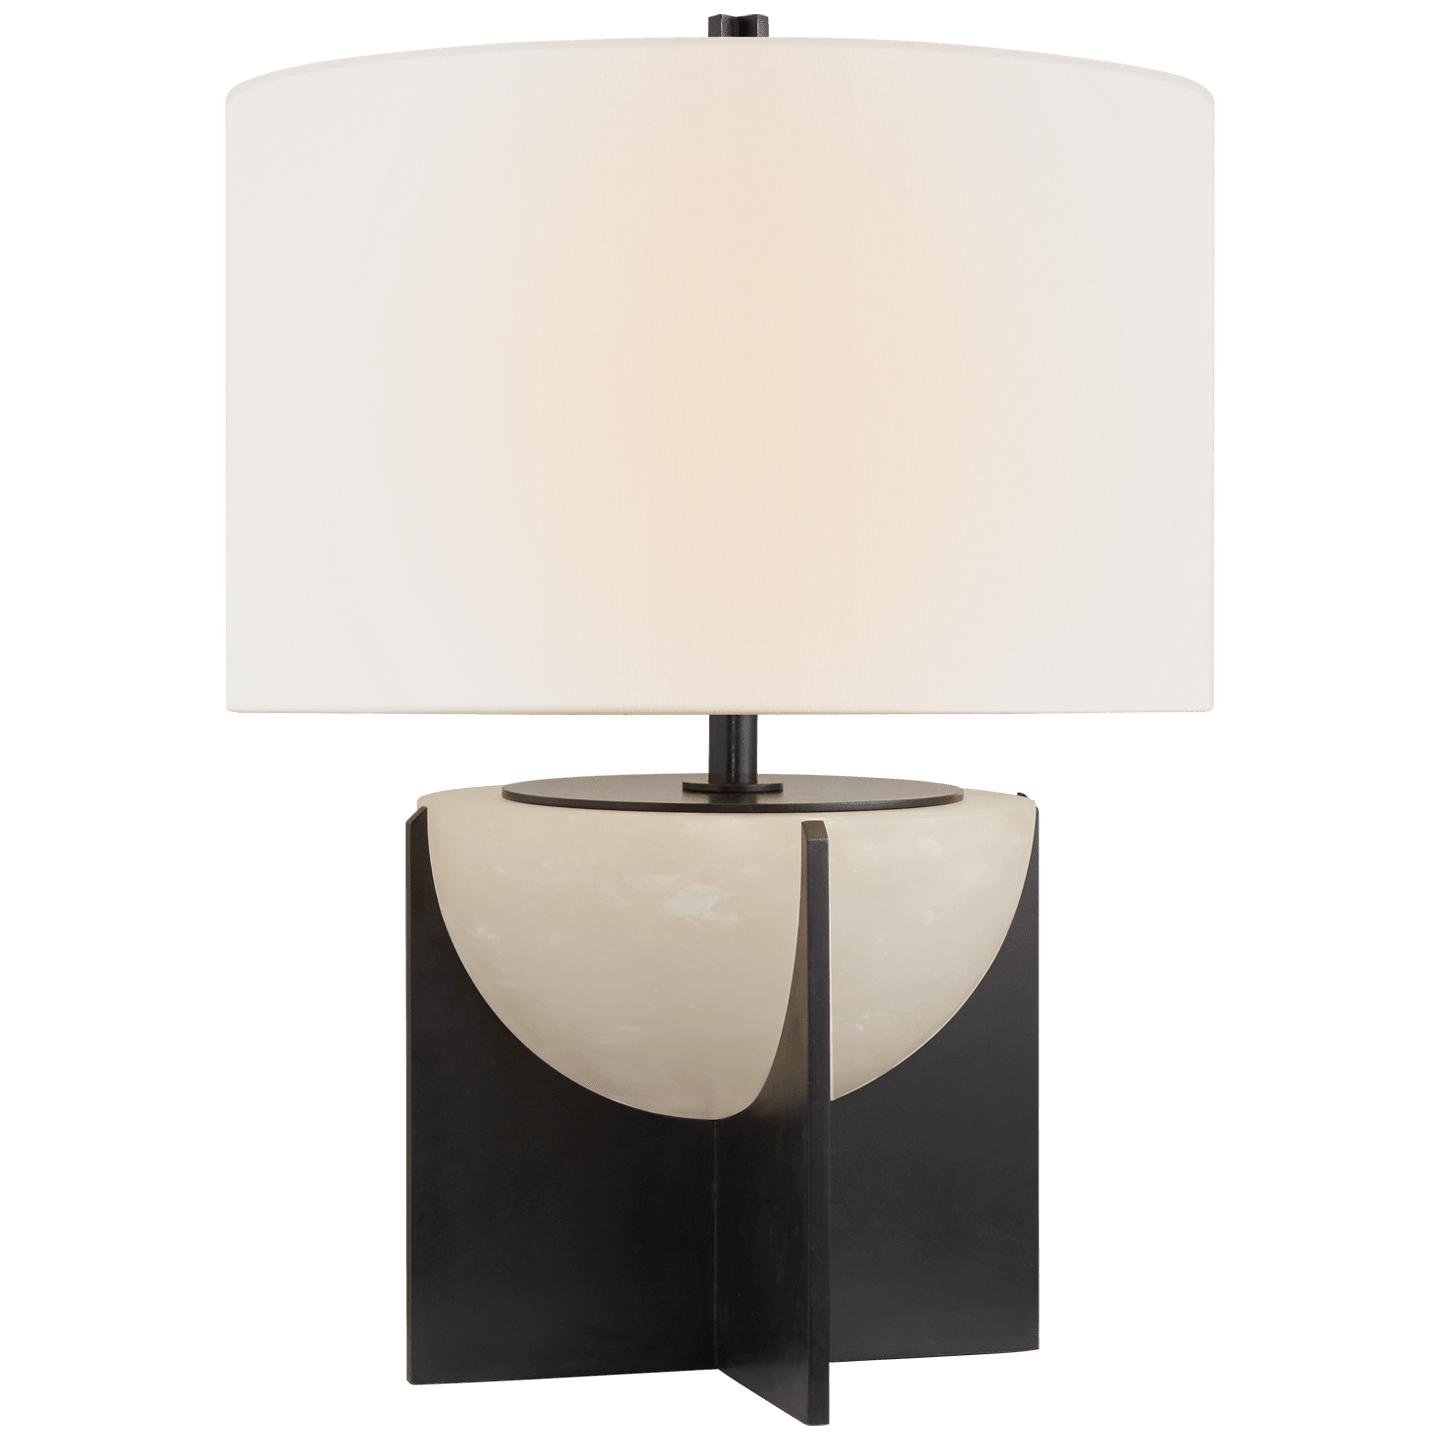 Купить Настольная лампа Michaela Small Table Lamp в интернет-магазине roooms.ru